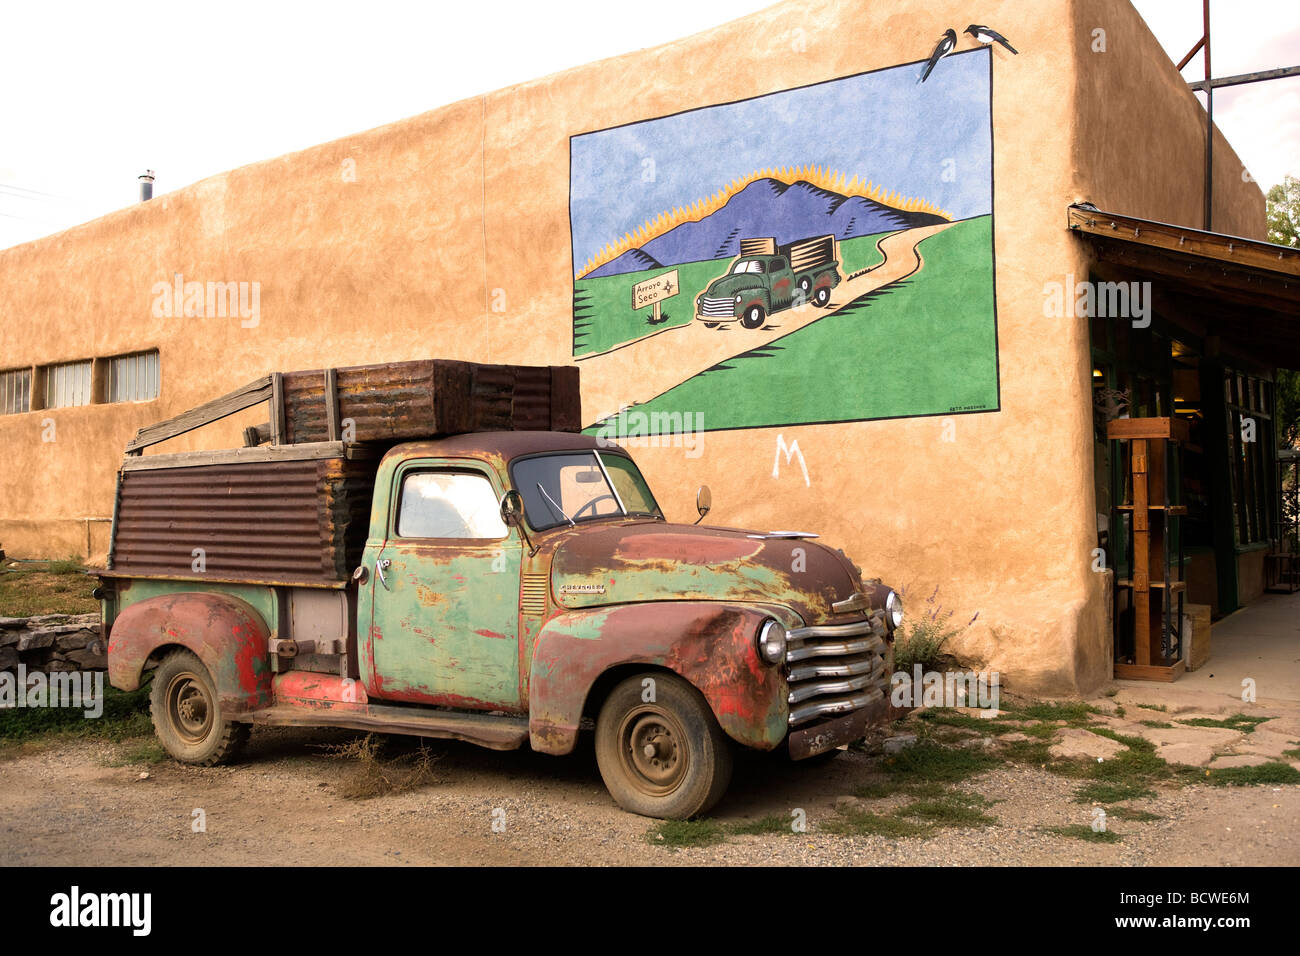 Murale su una parete con un vecchio carrello di fronte ad esso, Nuovo Messico, STATI UNITI D'AMERICA Foto Stock